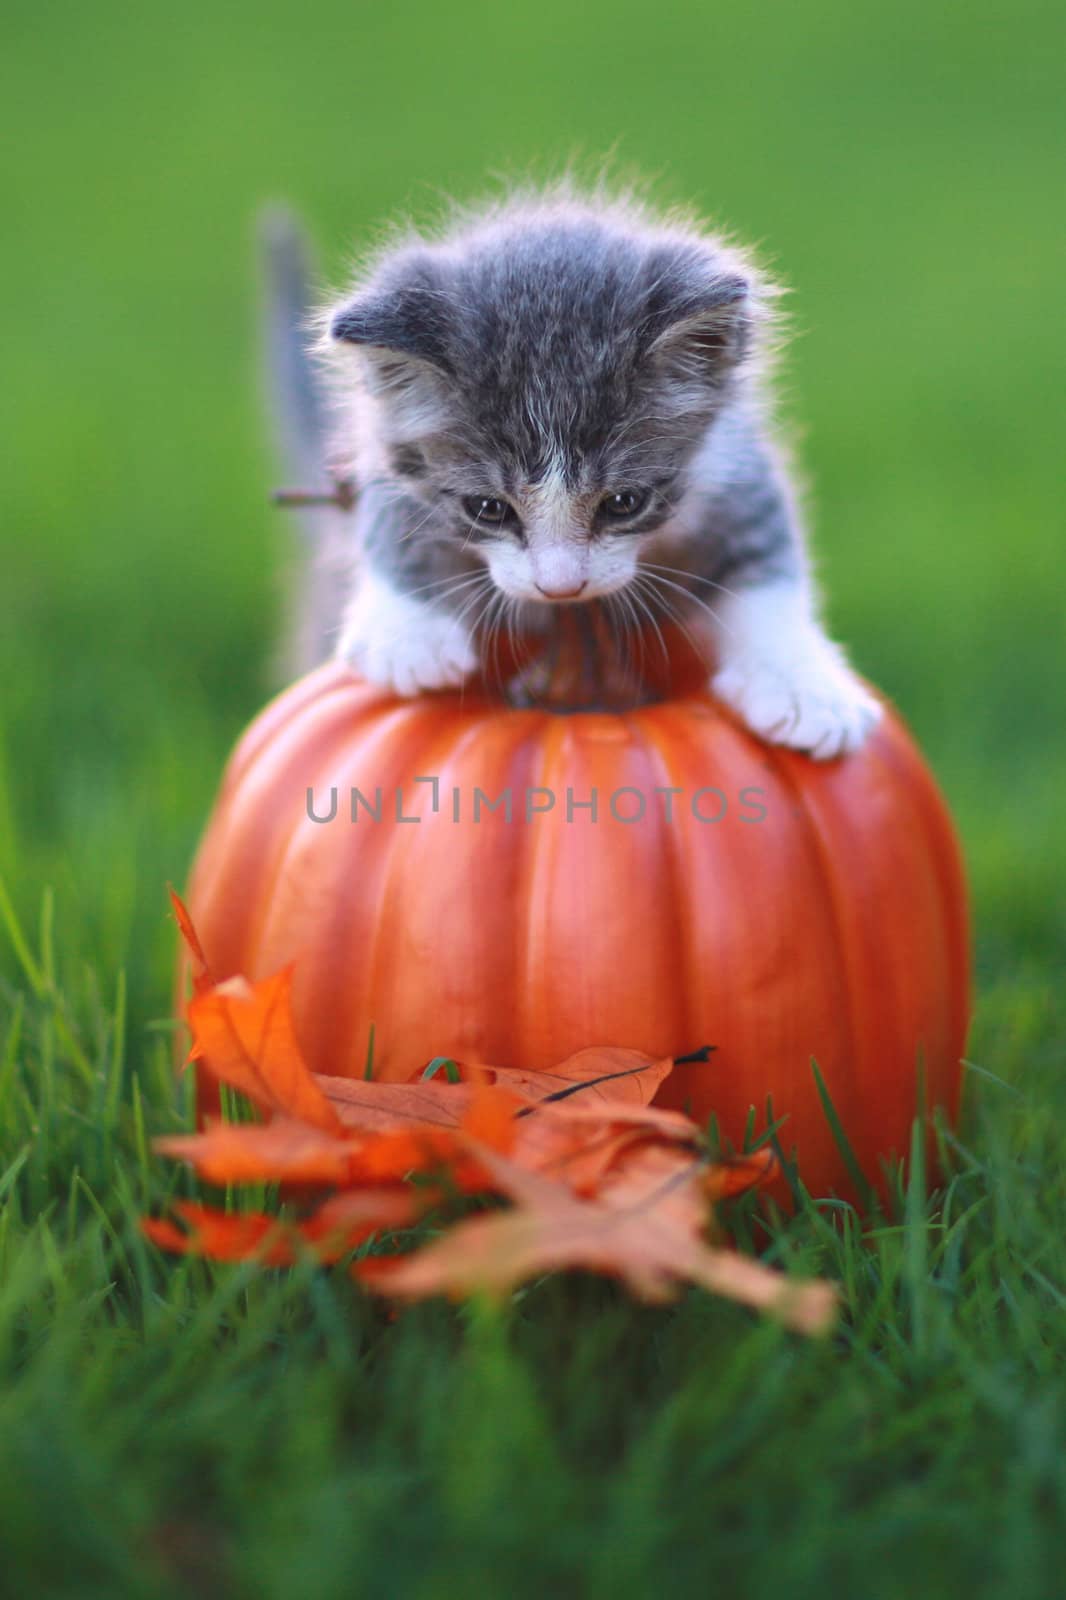 Fall Themed Kitten Image by tobkatrina